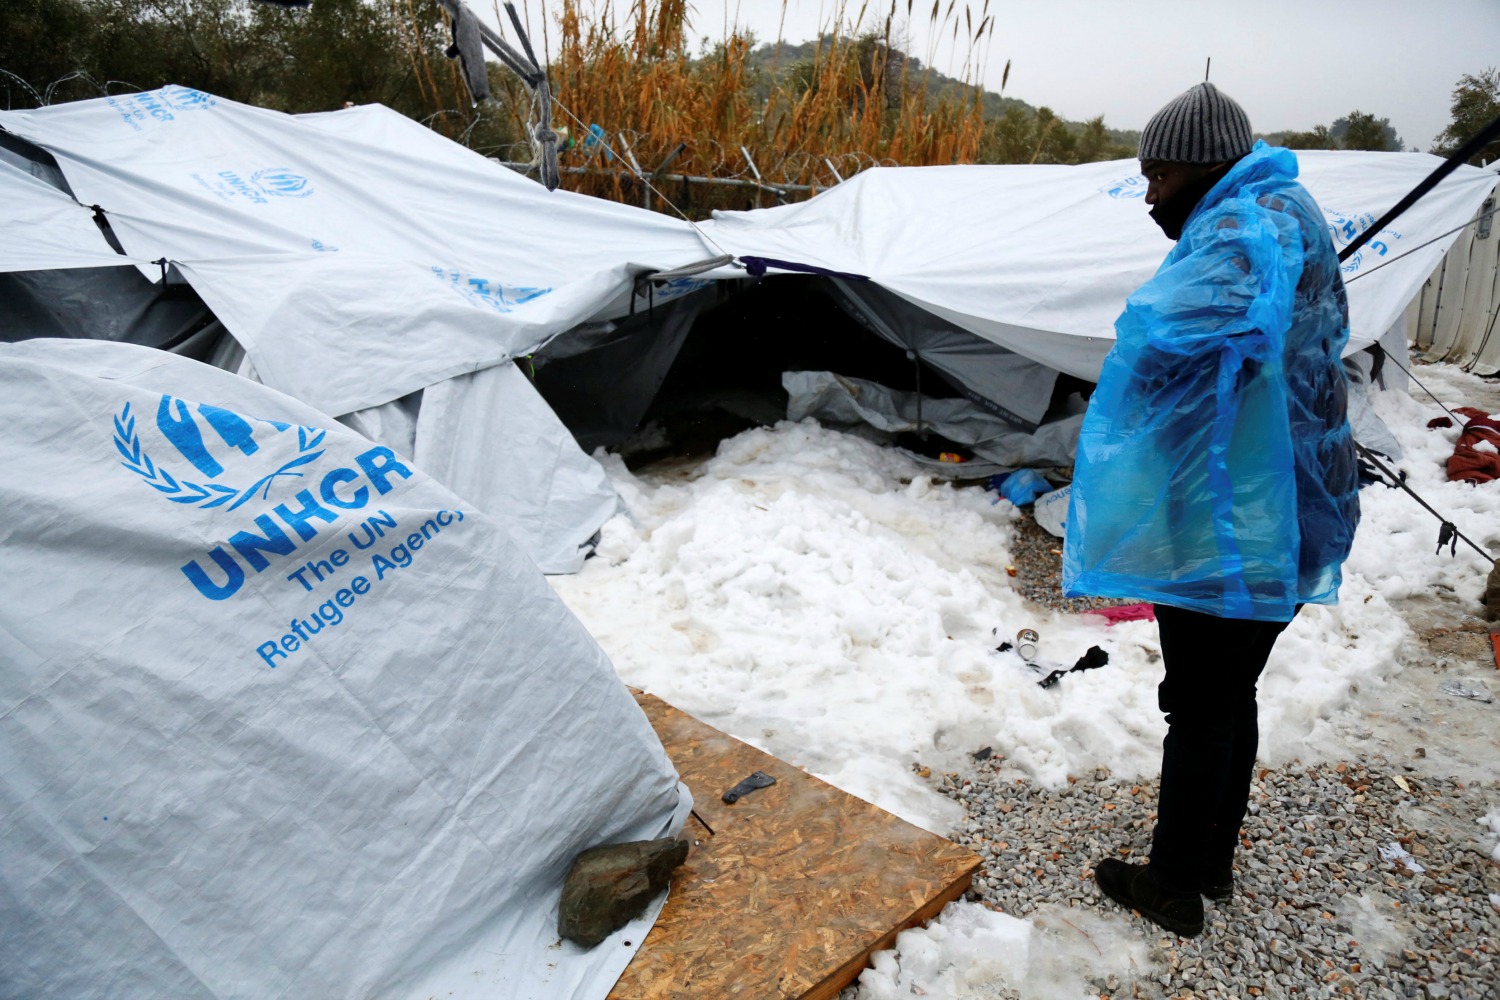 Mientras en Davos se debate, miles de personas intentan no morir de frío bajo las tiendas de campaña. ( Foto: Petros Tsakmakis / vía Reuters)